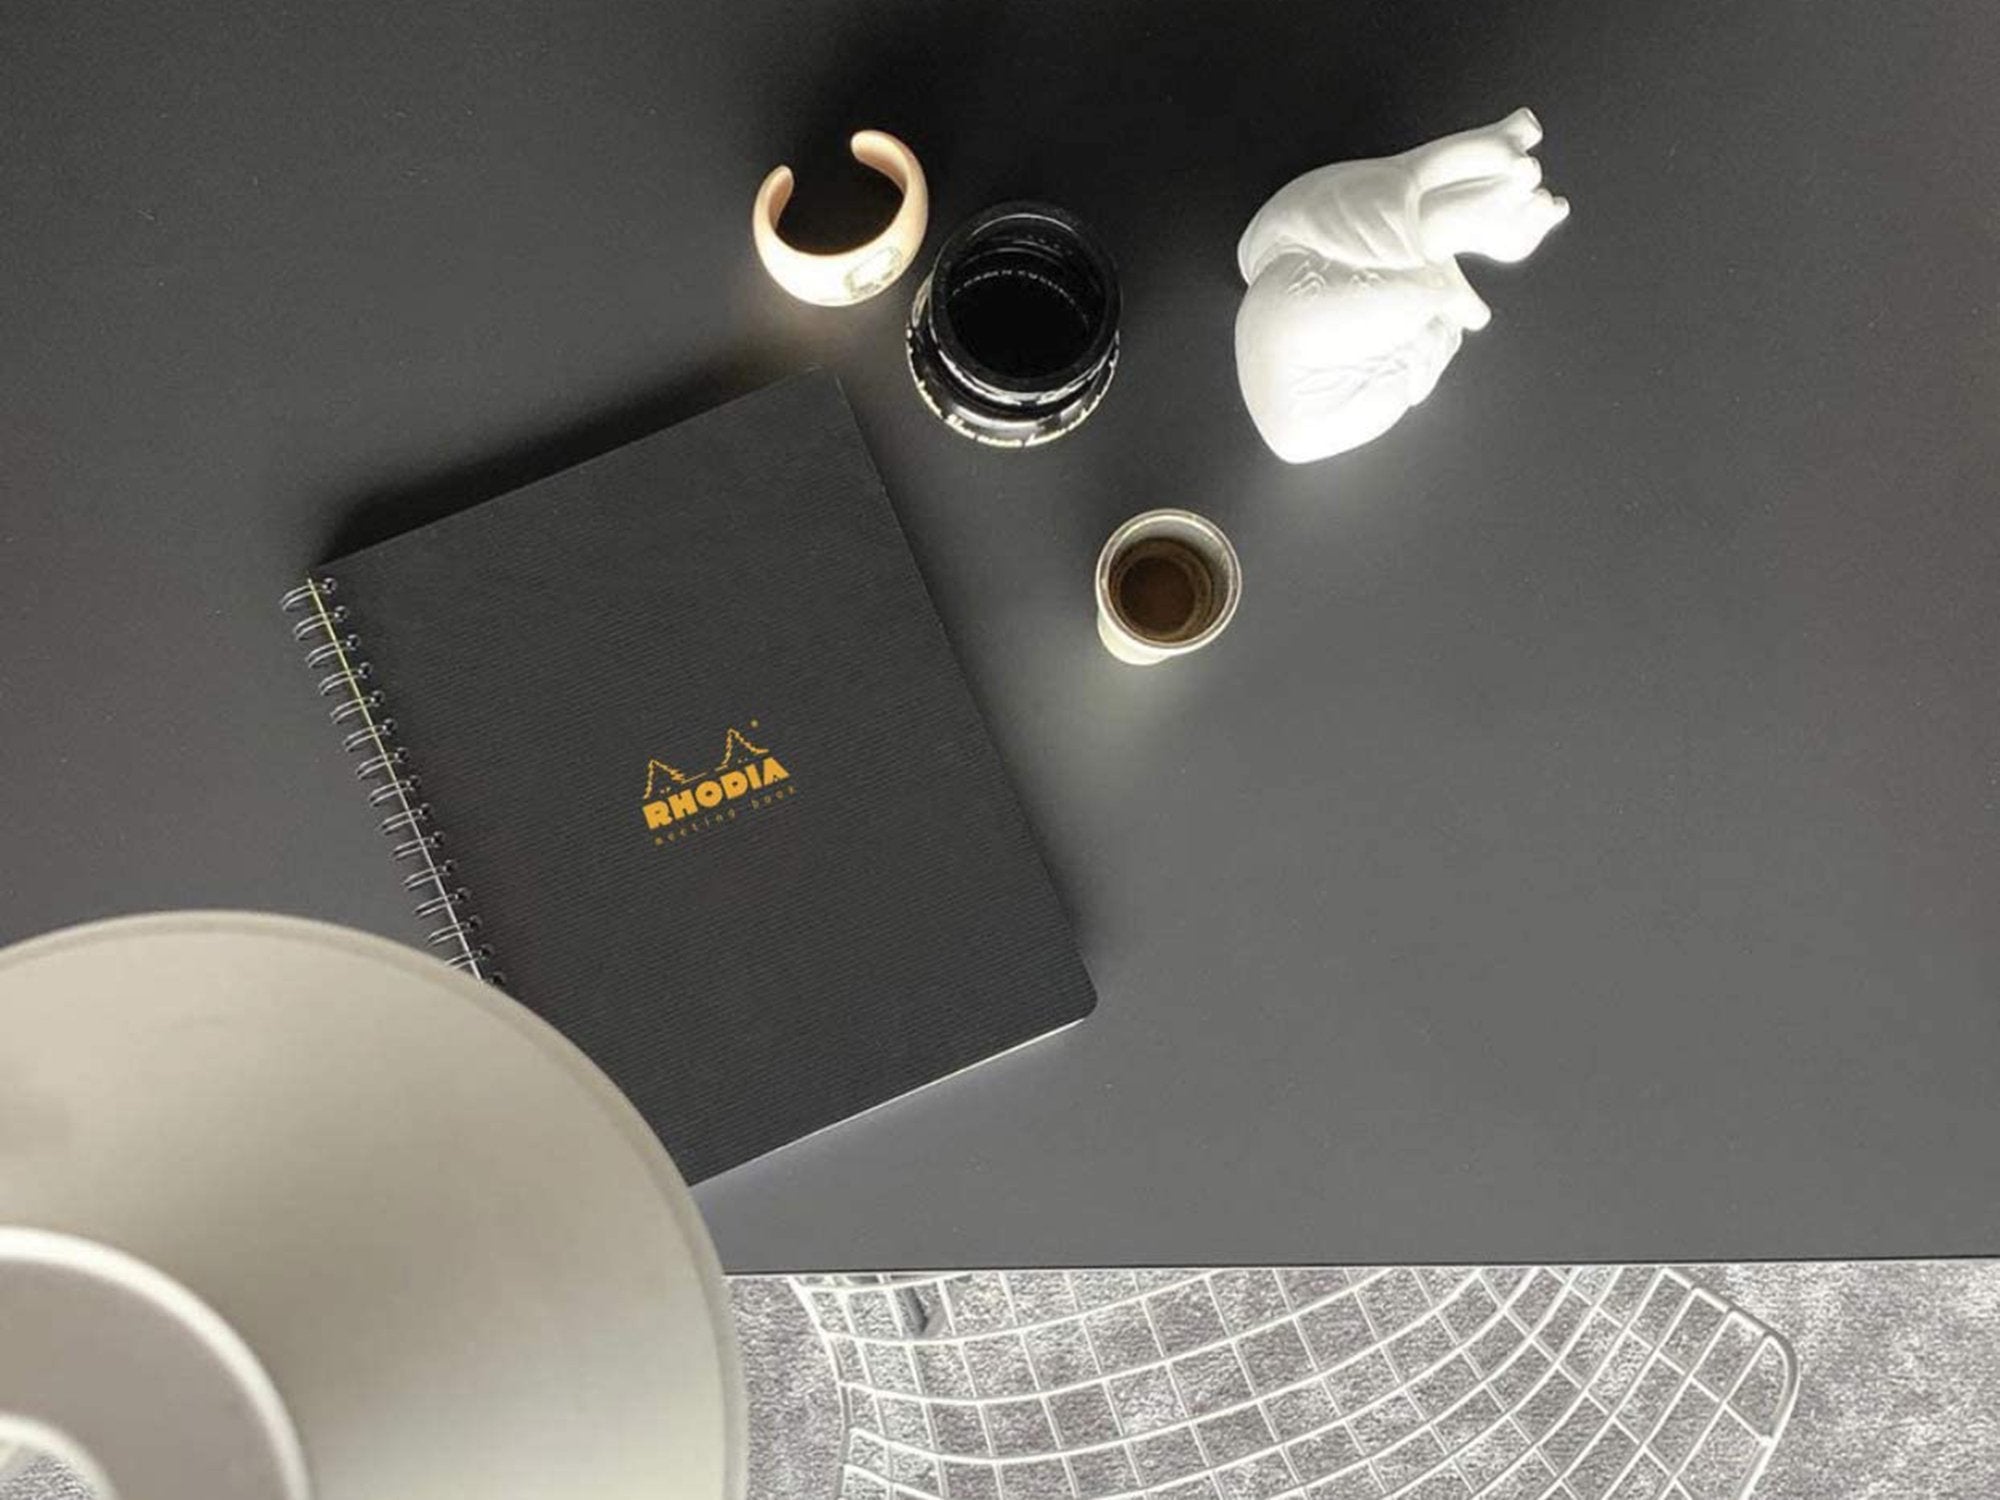 Rhodia R Premium Notepad – Jenni Bick Custom Journals